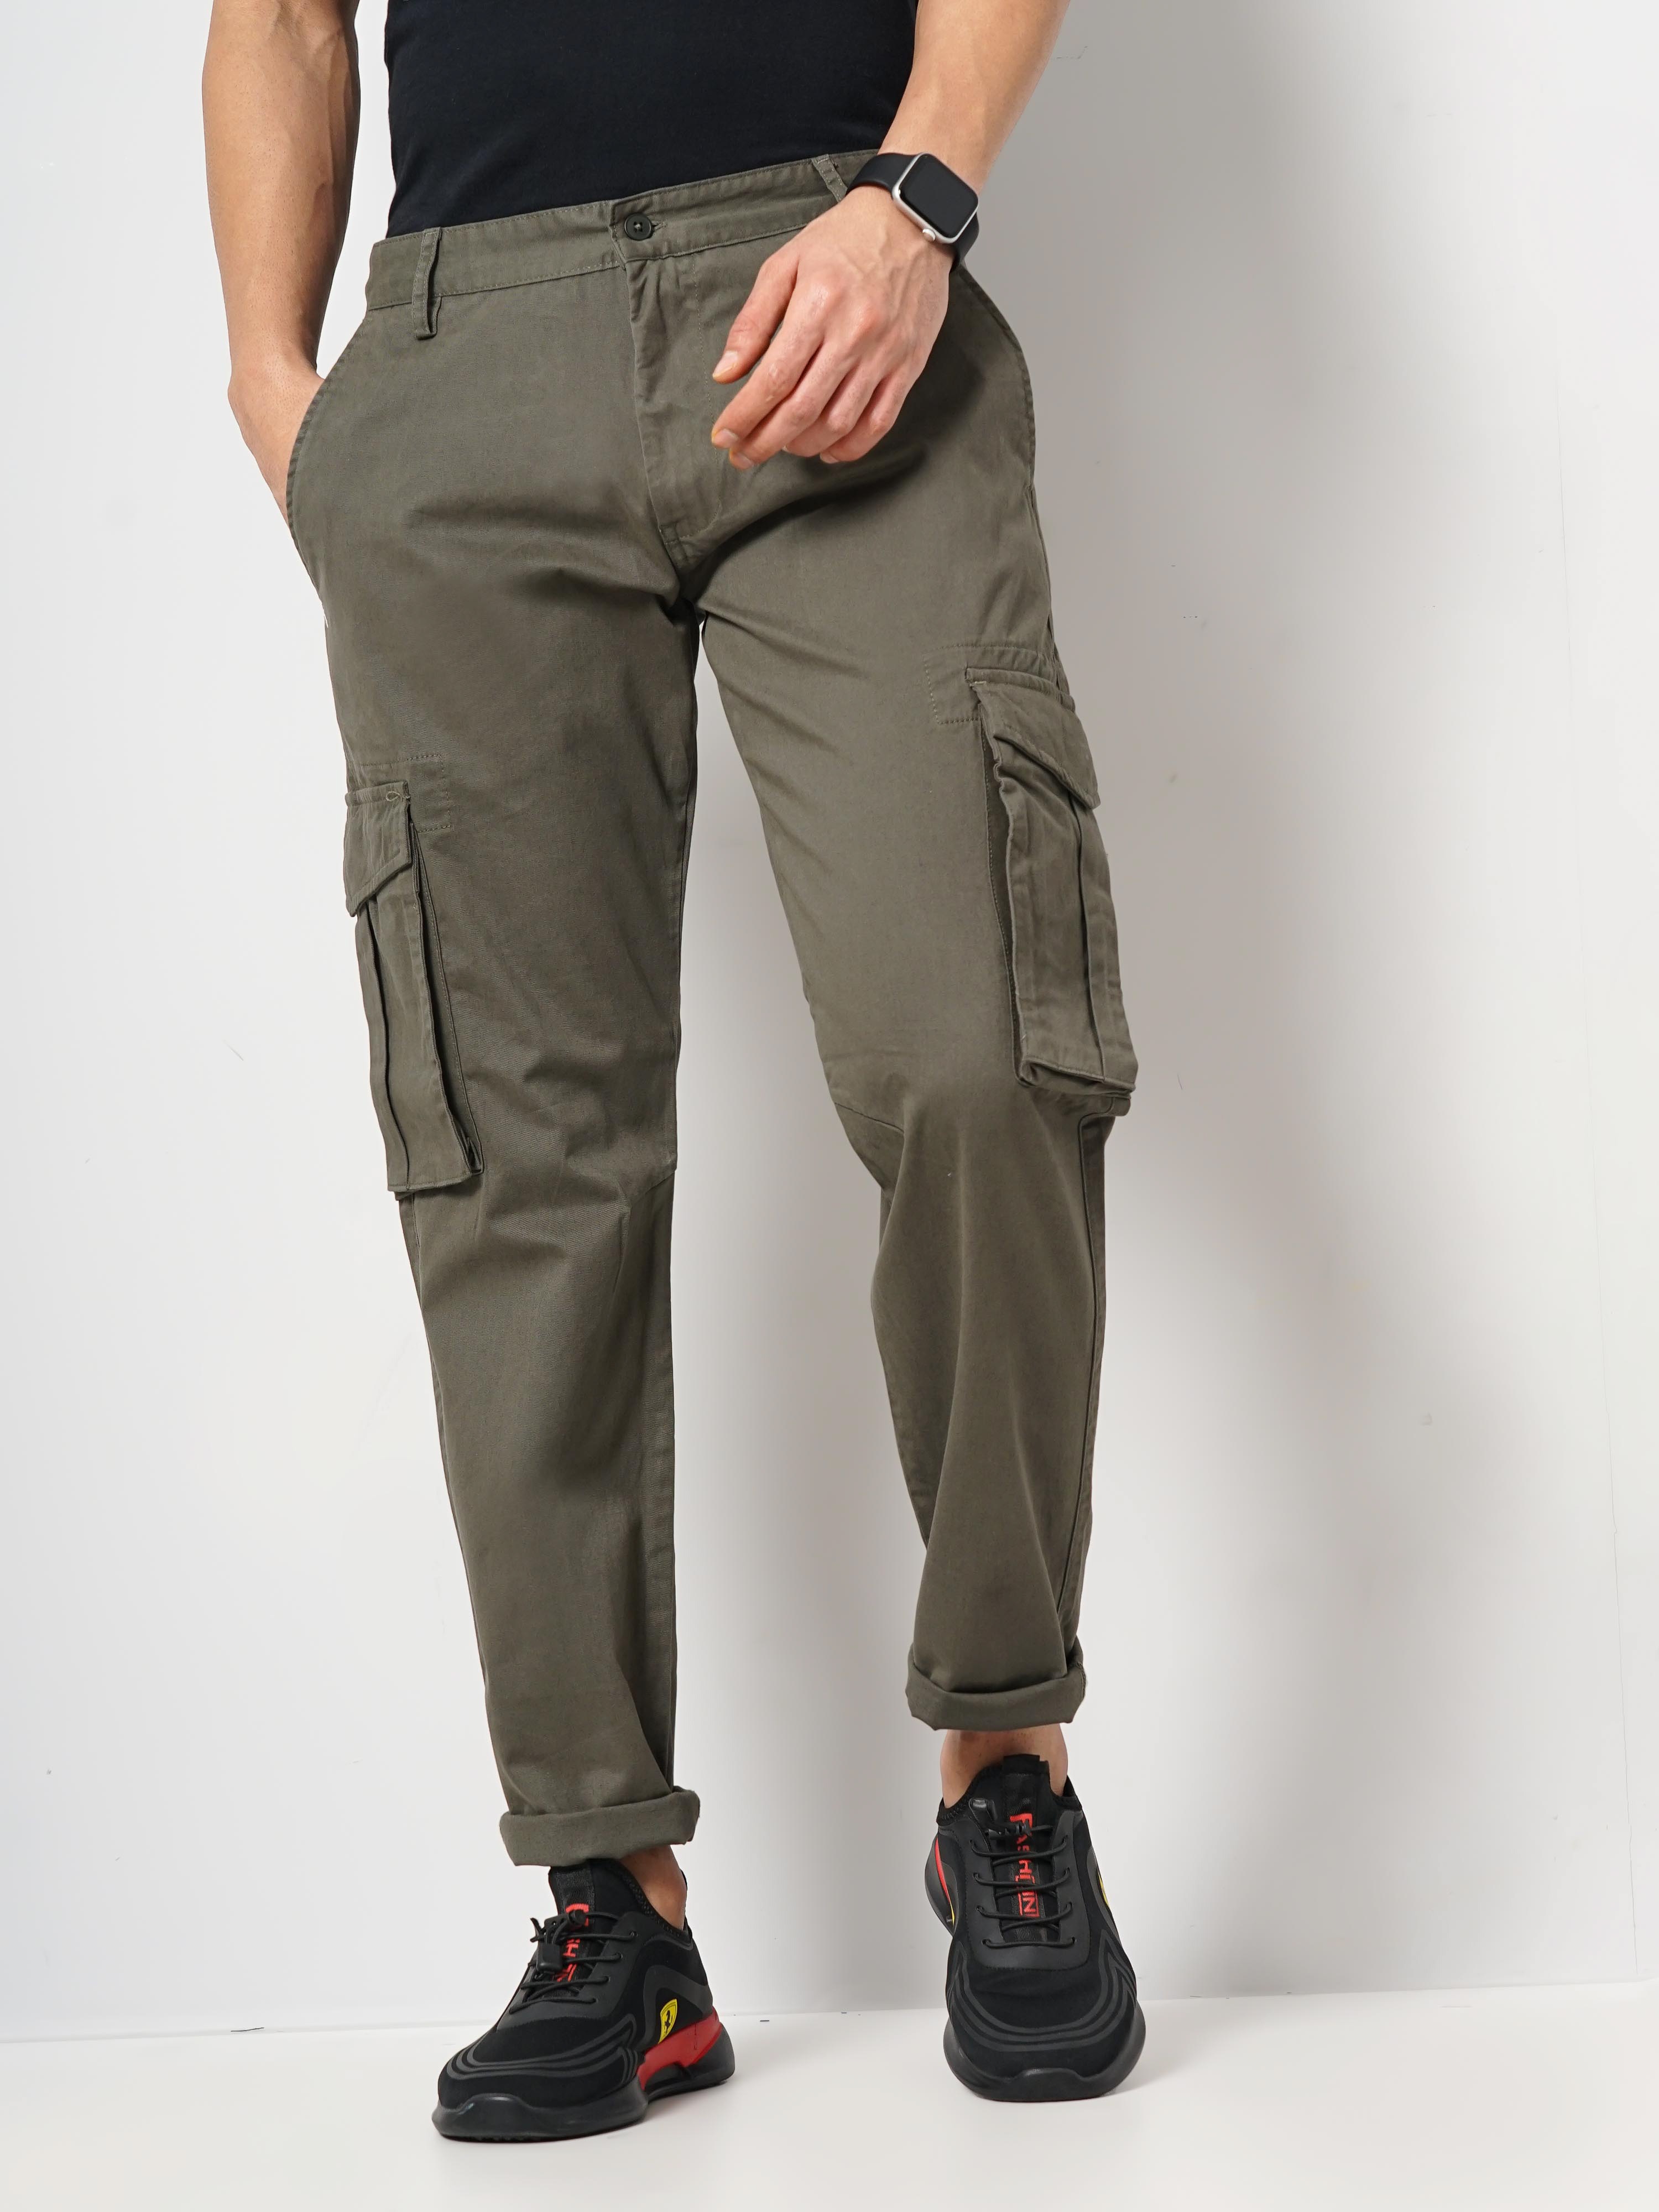 Korean Baggy Loose Fit Pants For Men's - Military Green